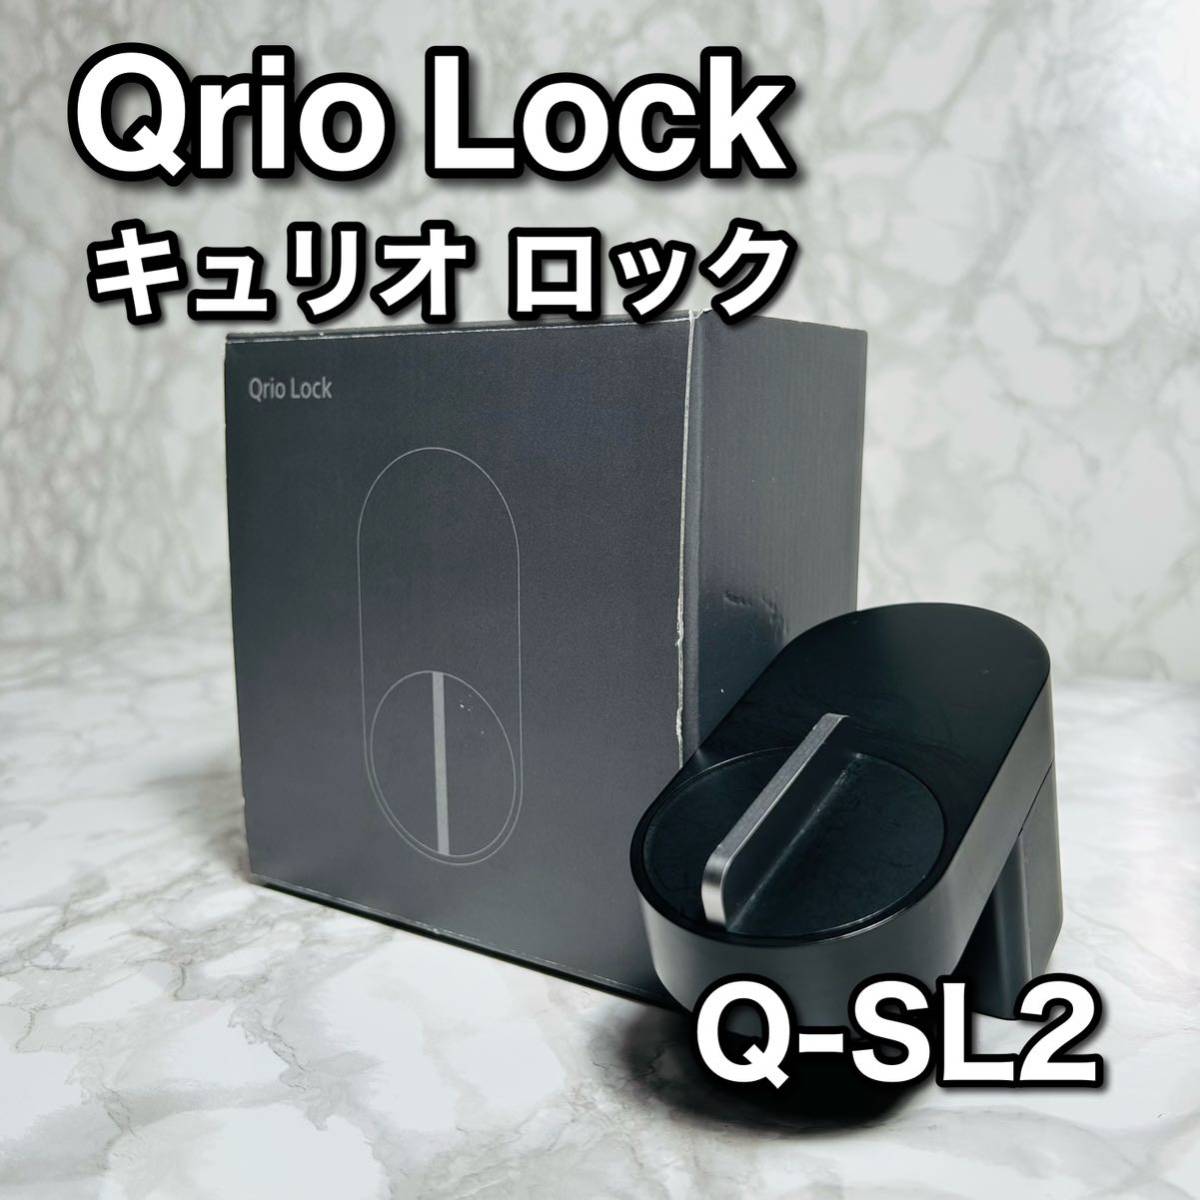 割引お買い得 Qrio Lock キュリオロック ブラック スマートロック Q